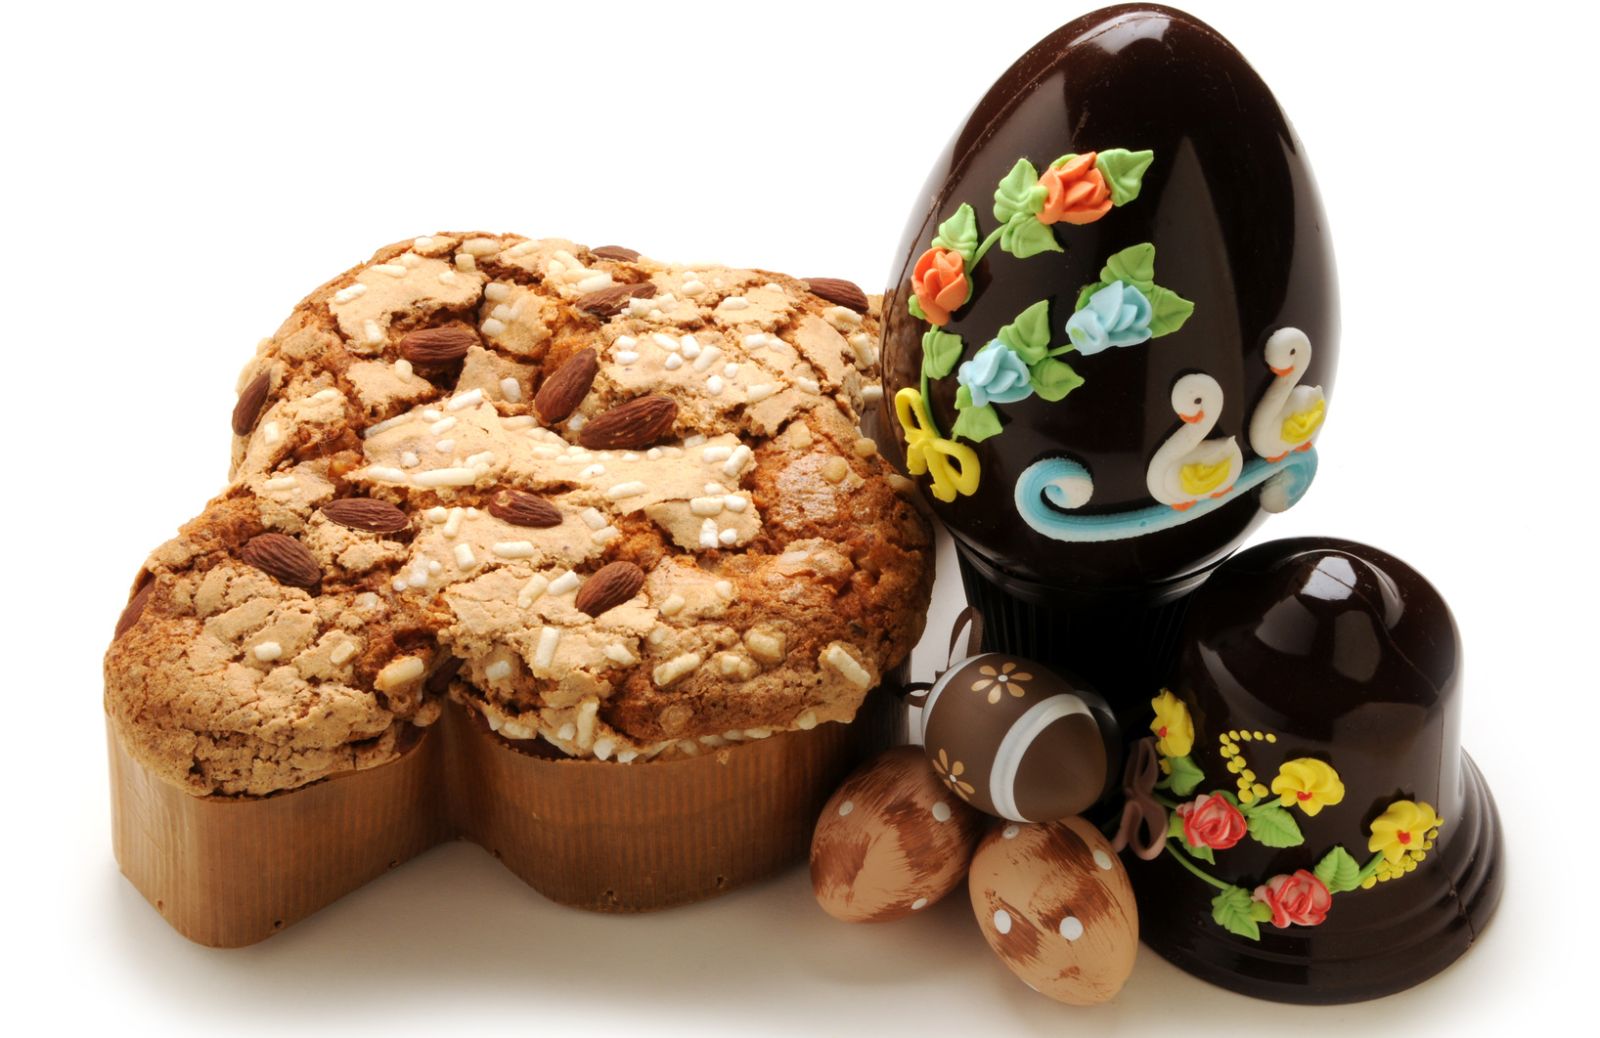 Pasqua Pernigotti: come decorare l’uovo di cioccolato